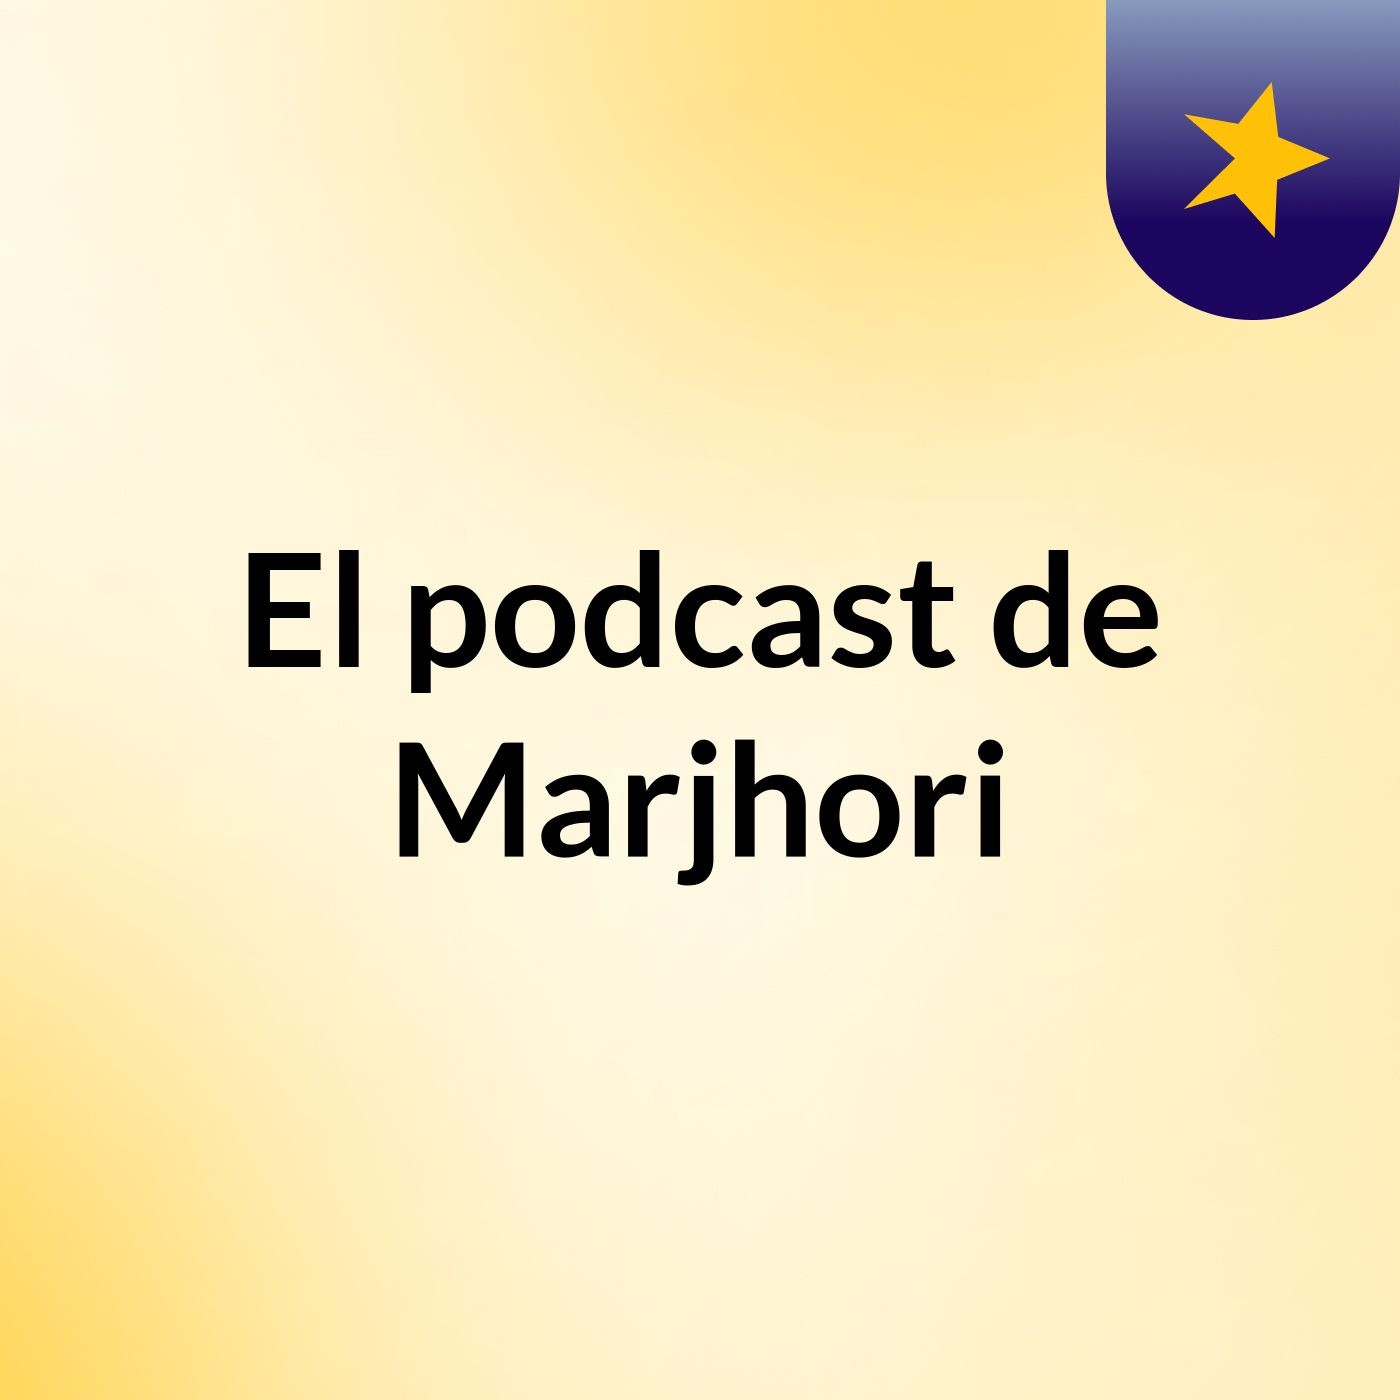 El podcast de Marjhori